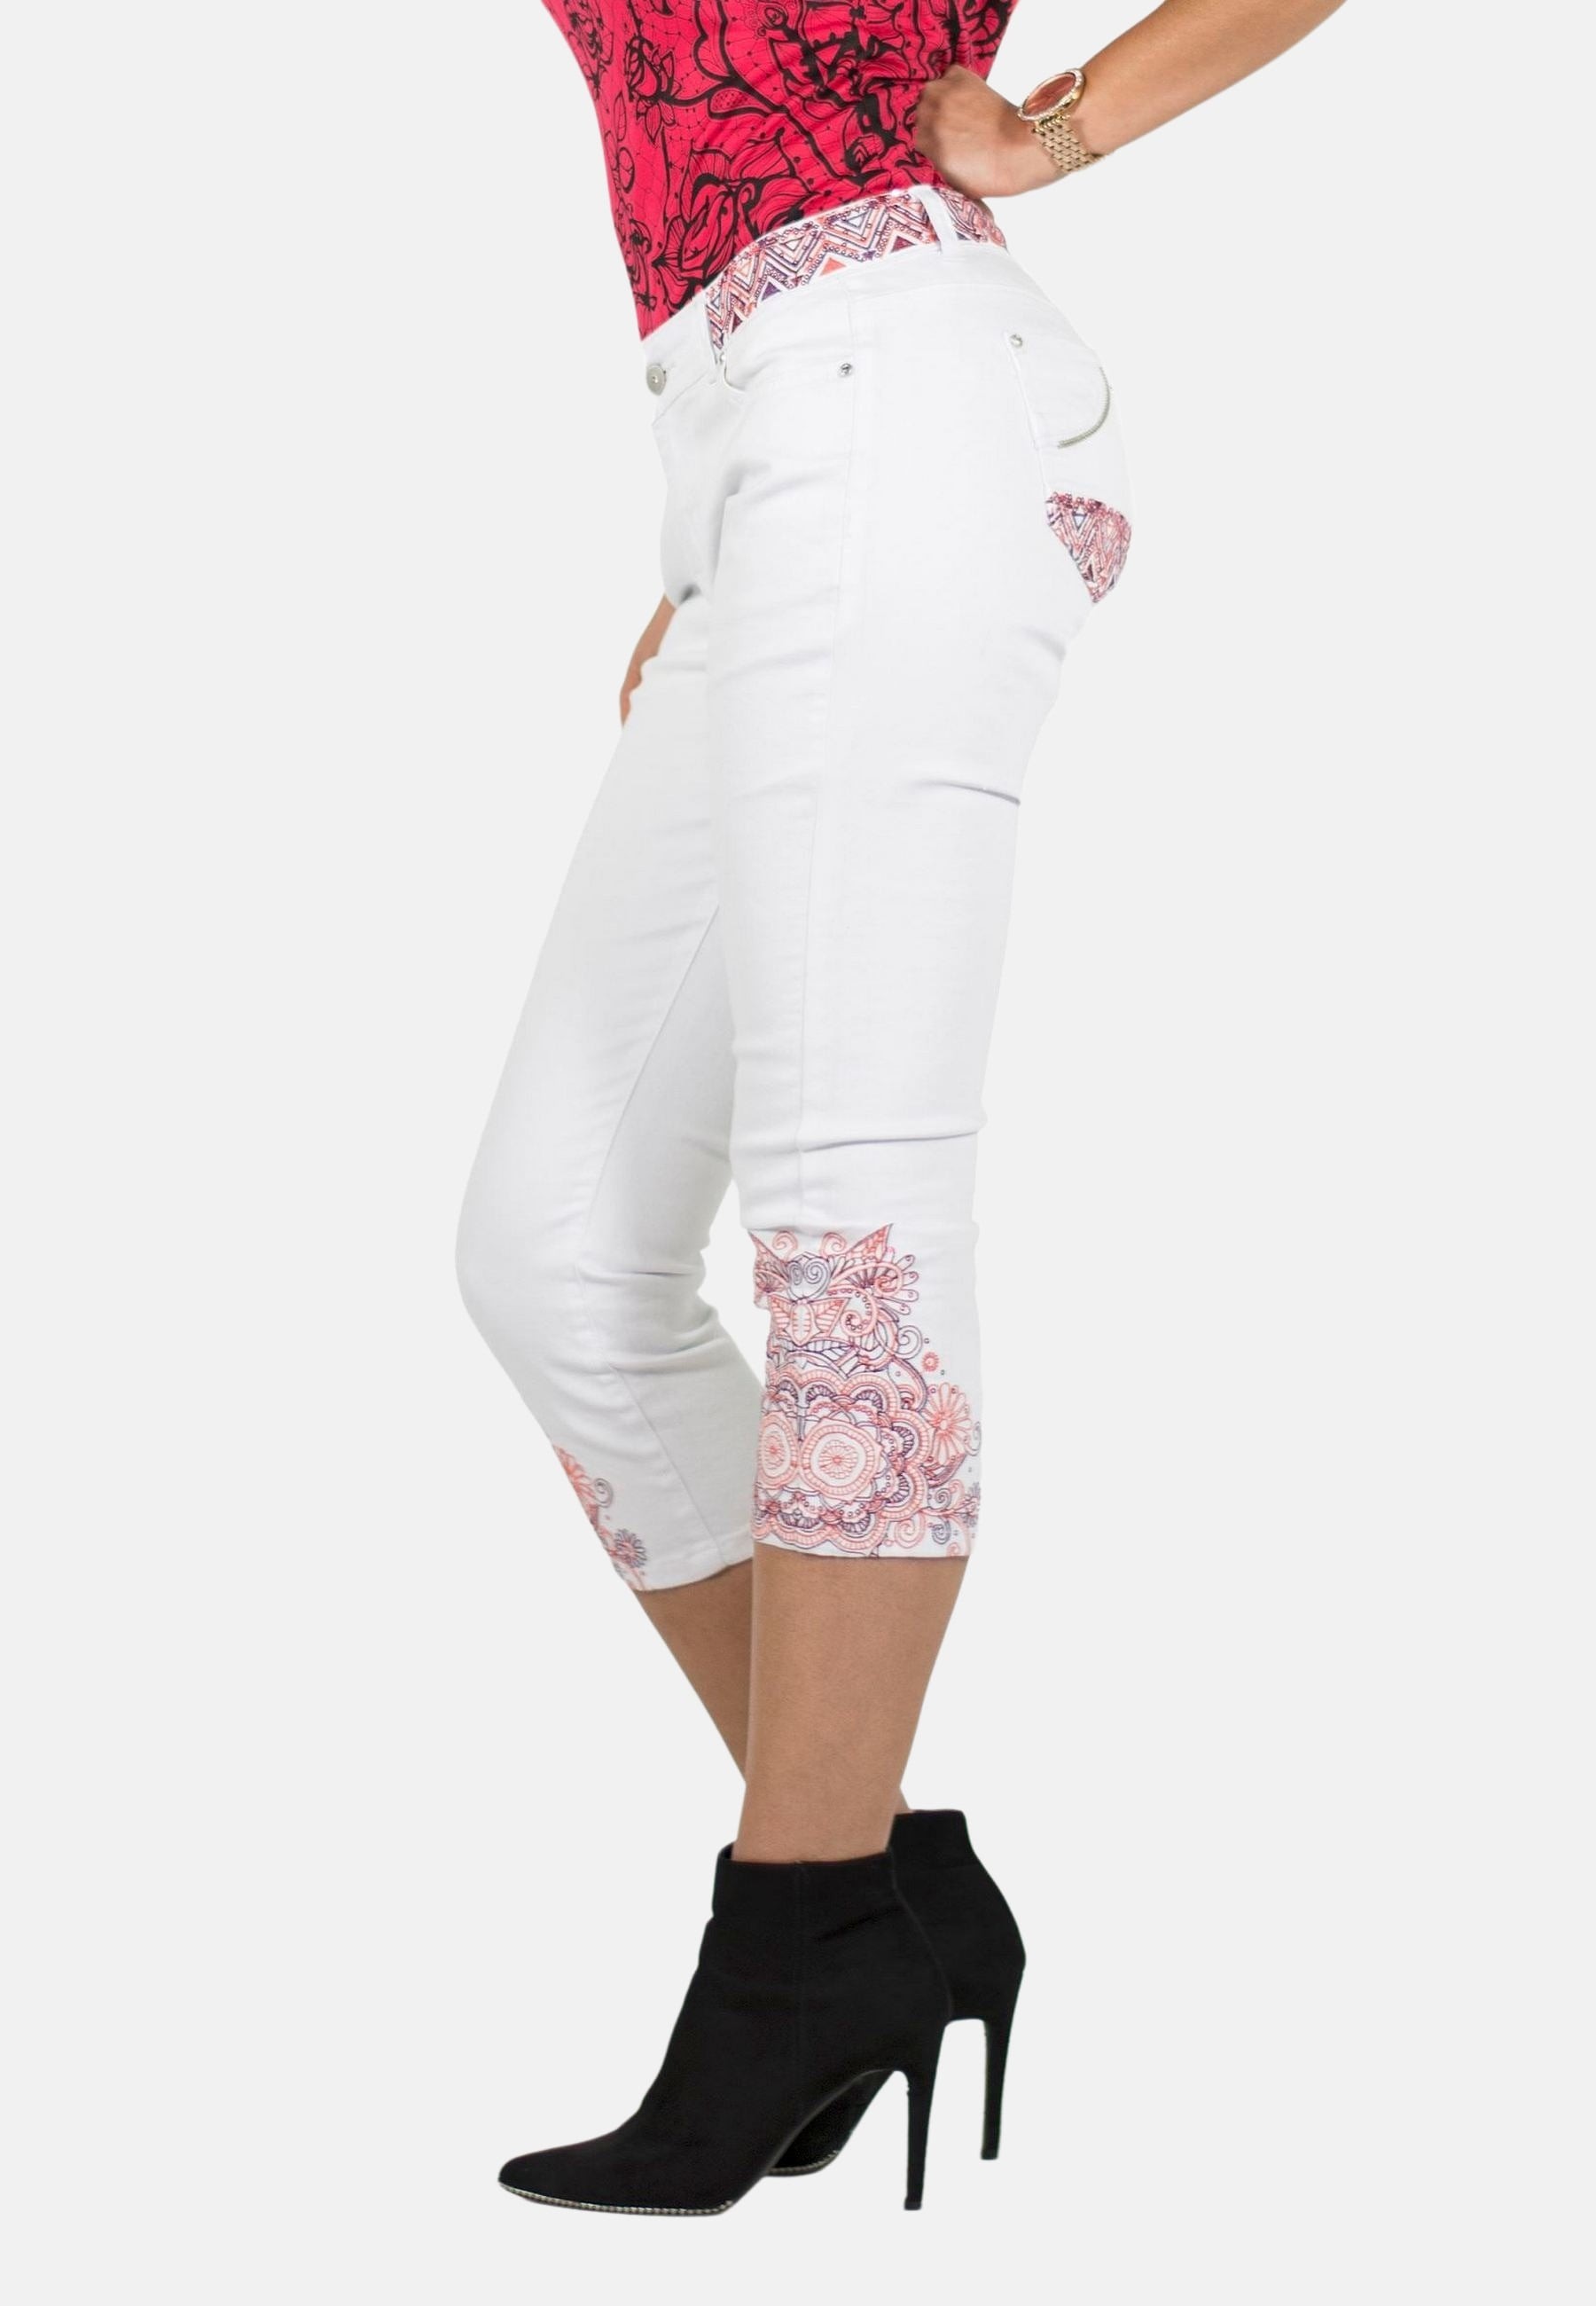 Pantalón corto Pirata bordados de mandalas en el bajo color Blanco para Mujer 1